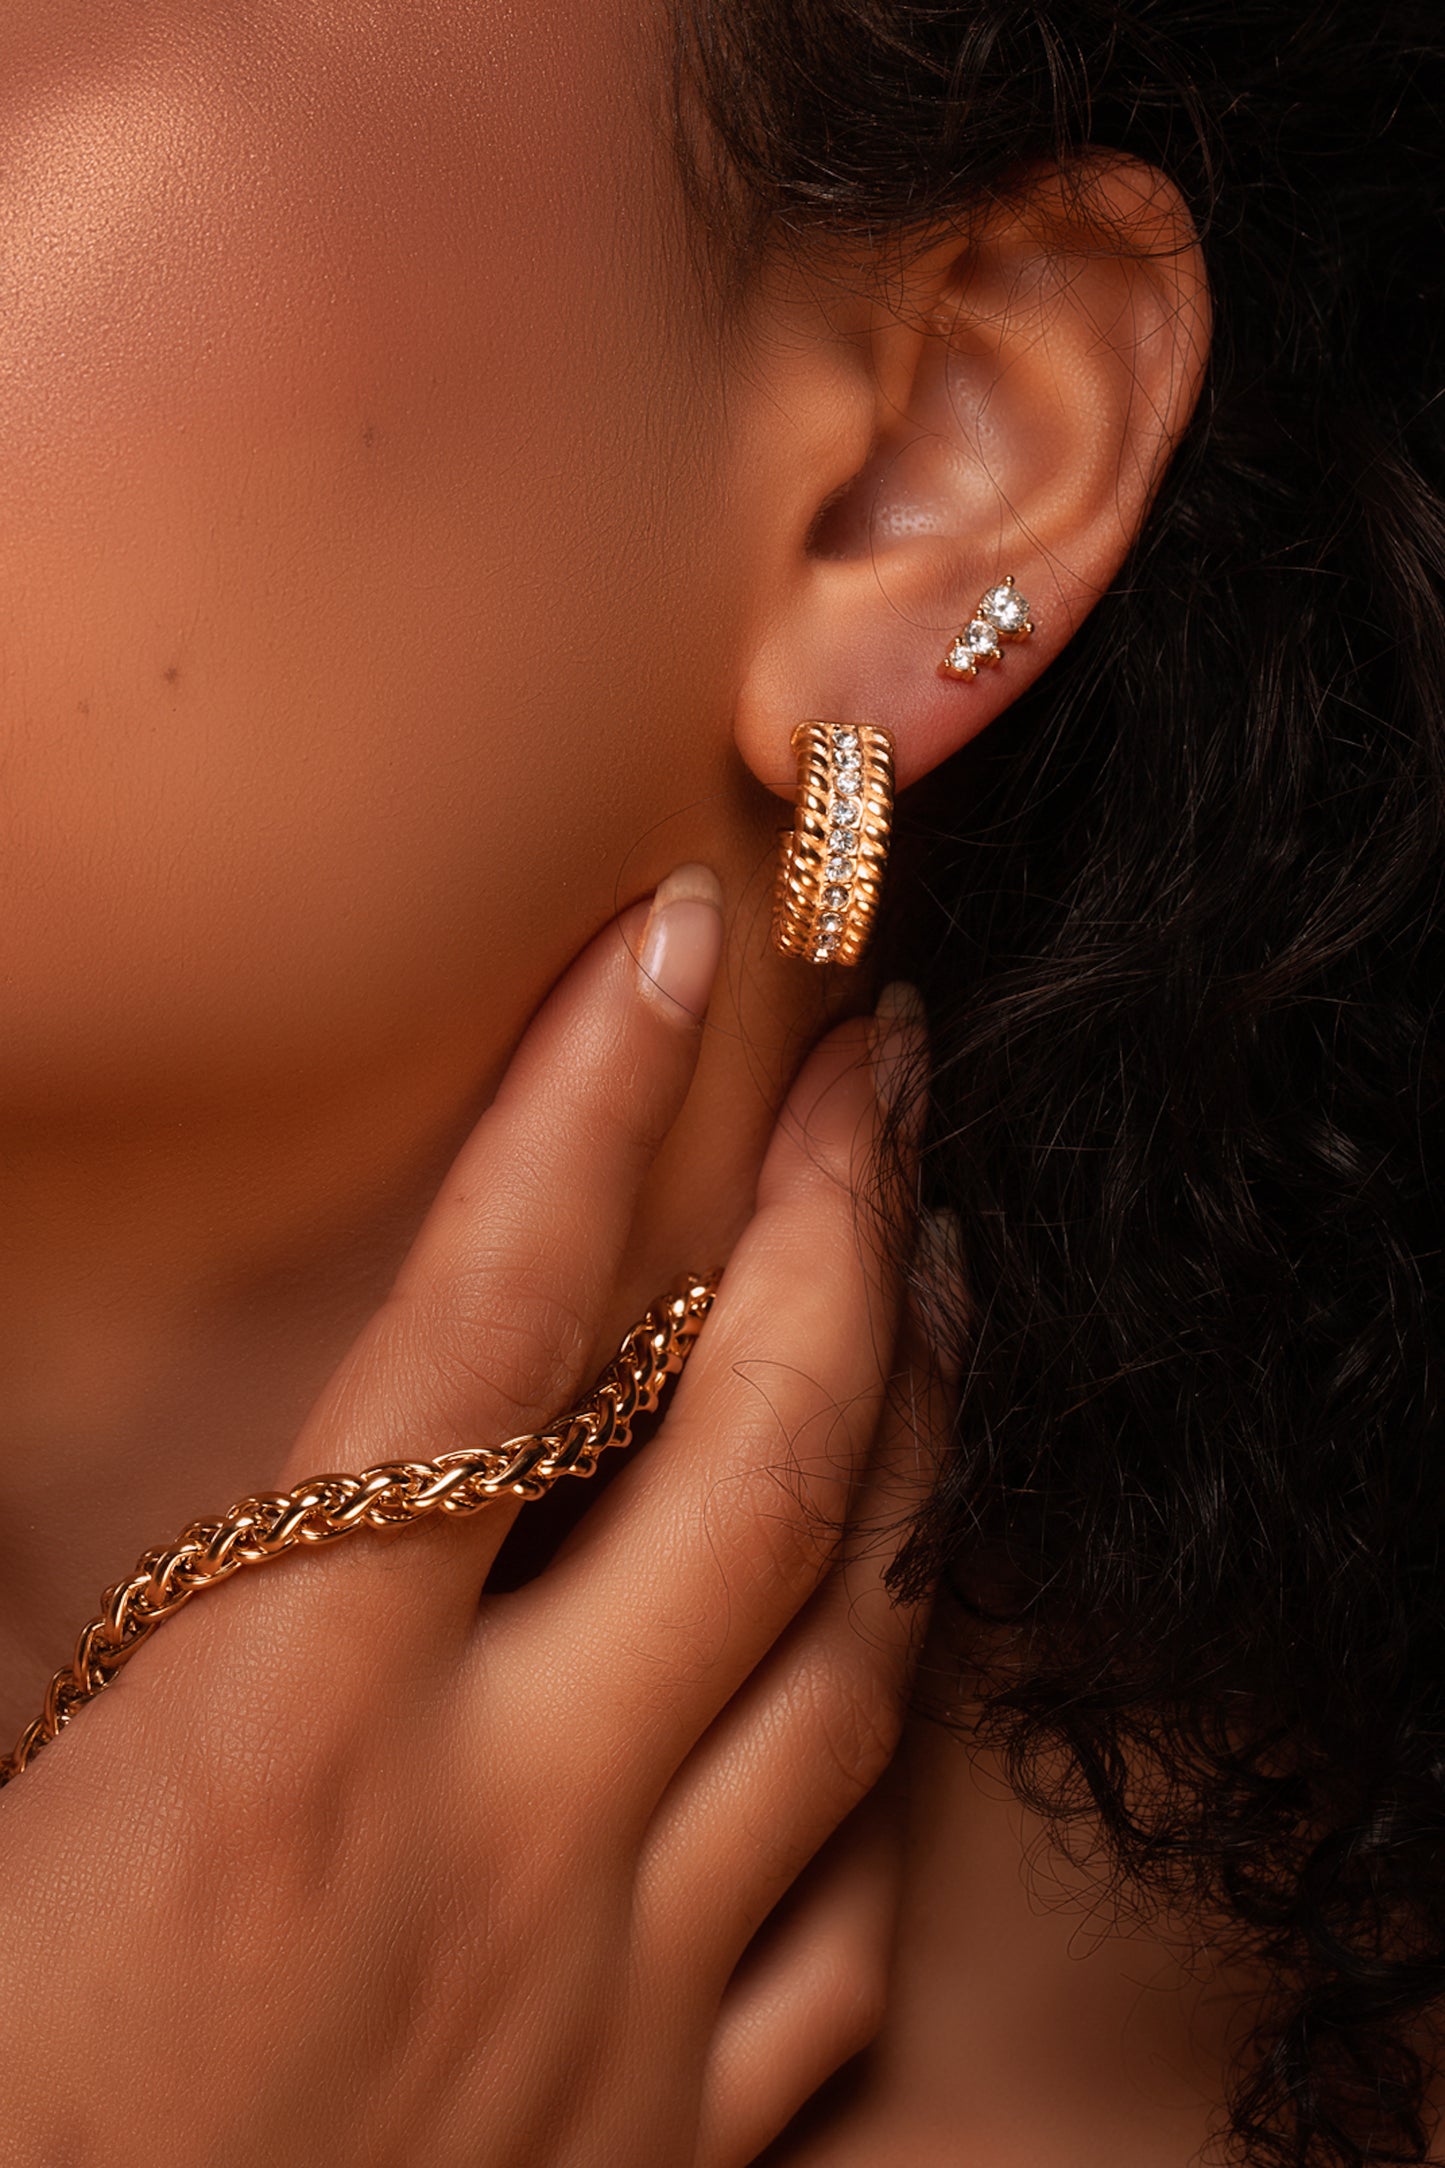 Woman wearing 3 stone cubic zirconia earrings. Women's Stainless Steel Three-Stone Cubic Zirconia Gold Earrings, Hypoallergenic and Waterproof, Elegant Fashion Jewelry